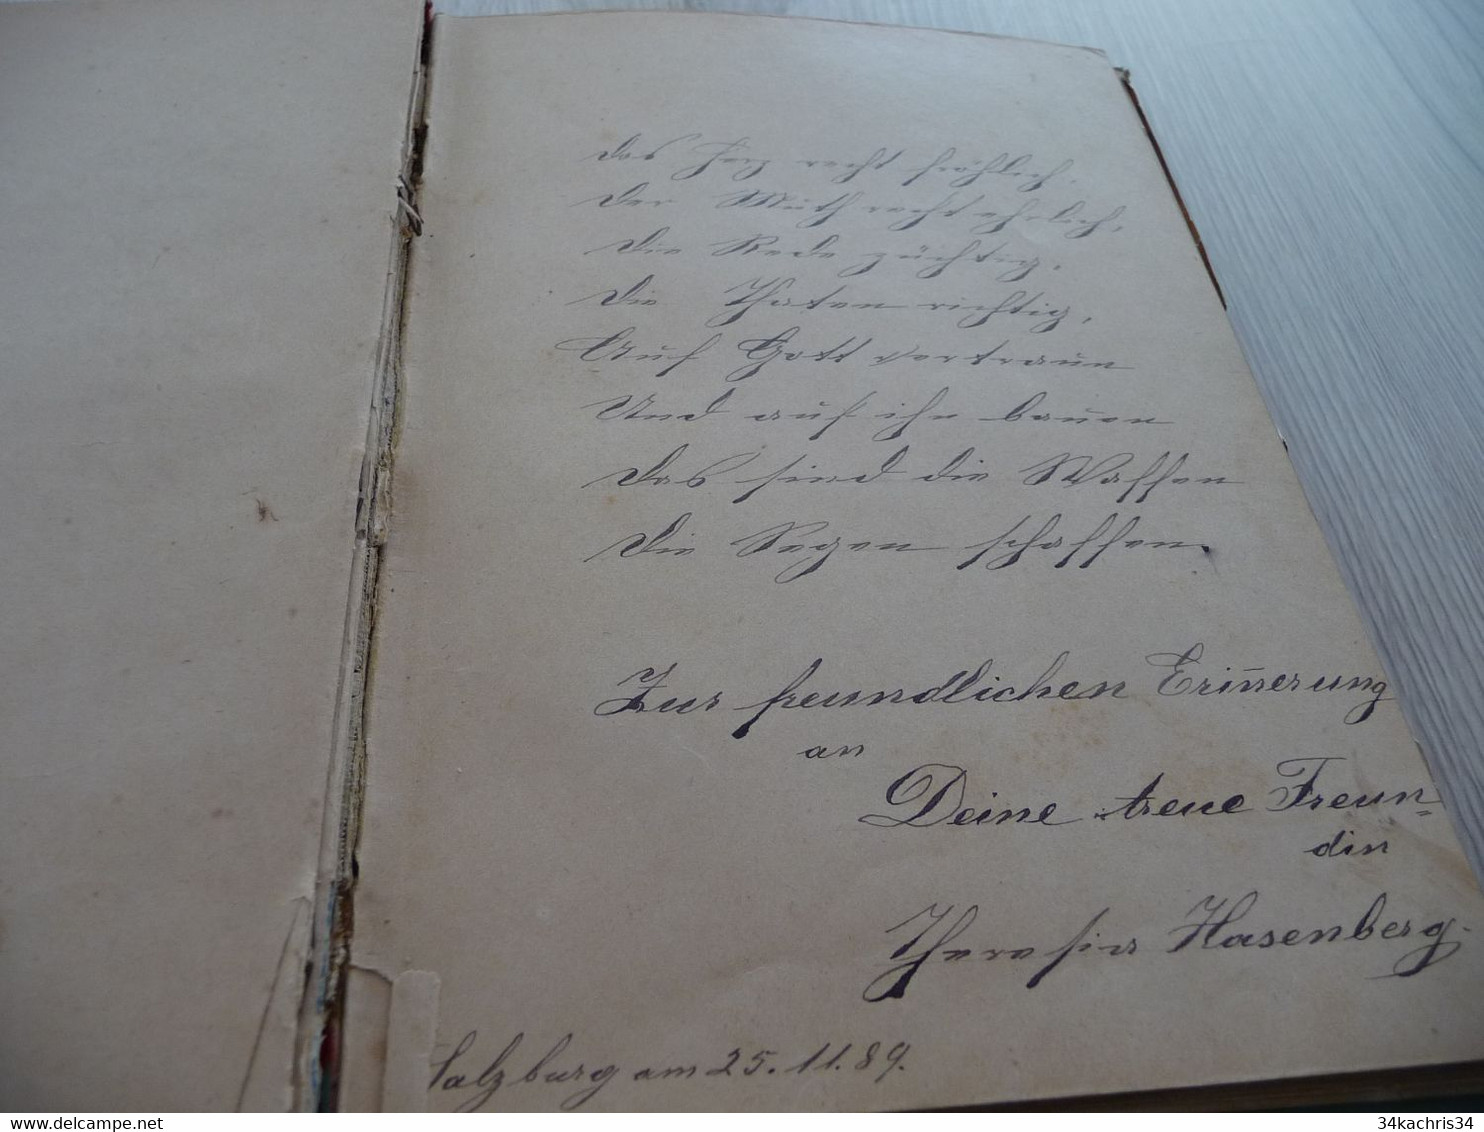 Cahier manuscrit Allemagne Autriche fin XIX ème + 30 poèmes originaux et textes autographes en l'état